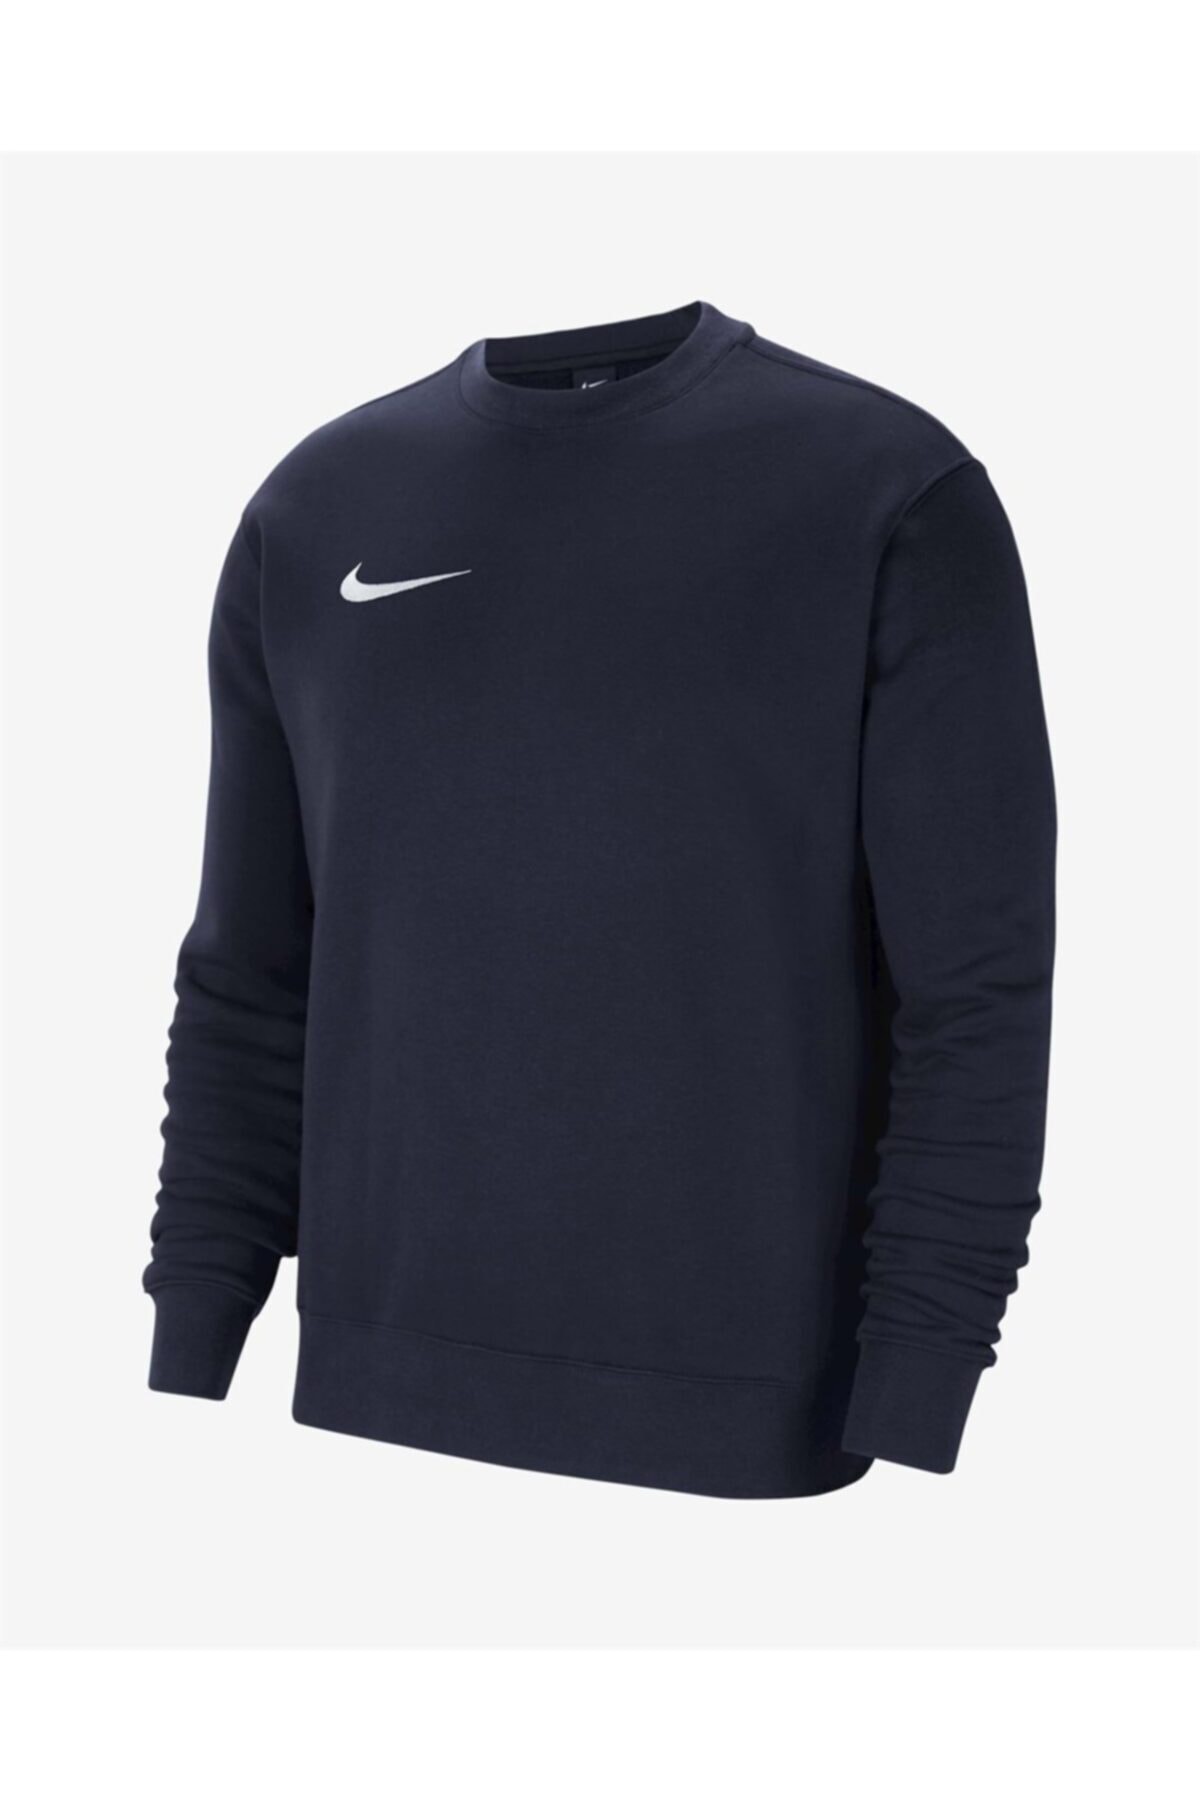 Nike Cw6902-451 M Nk Flc Park20 Crew Erkek Sweatshirt